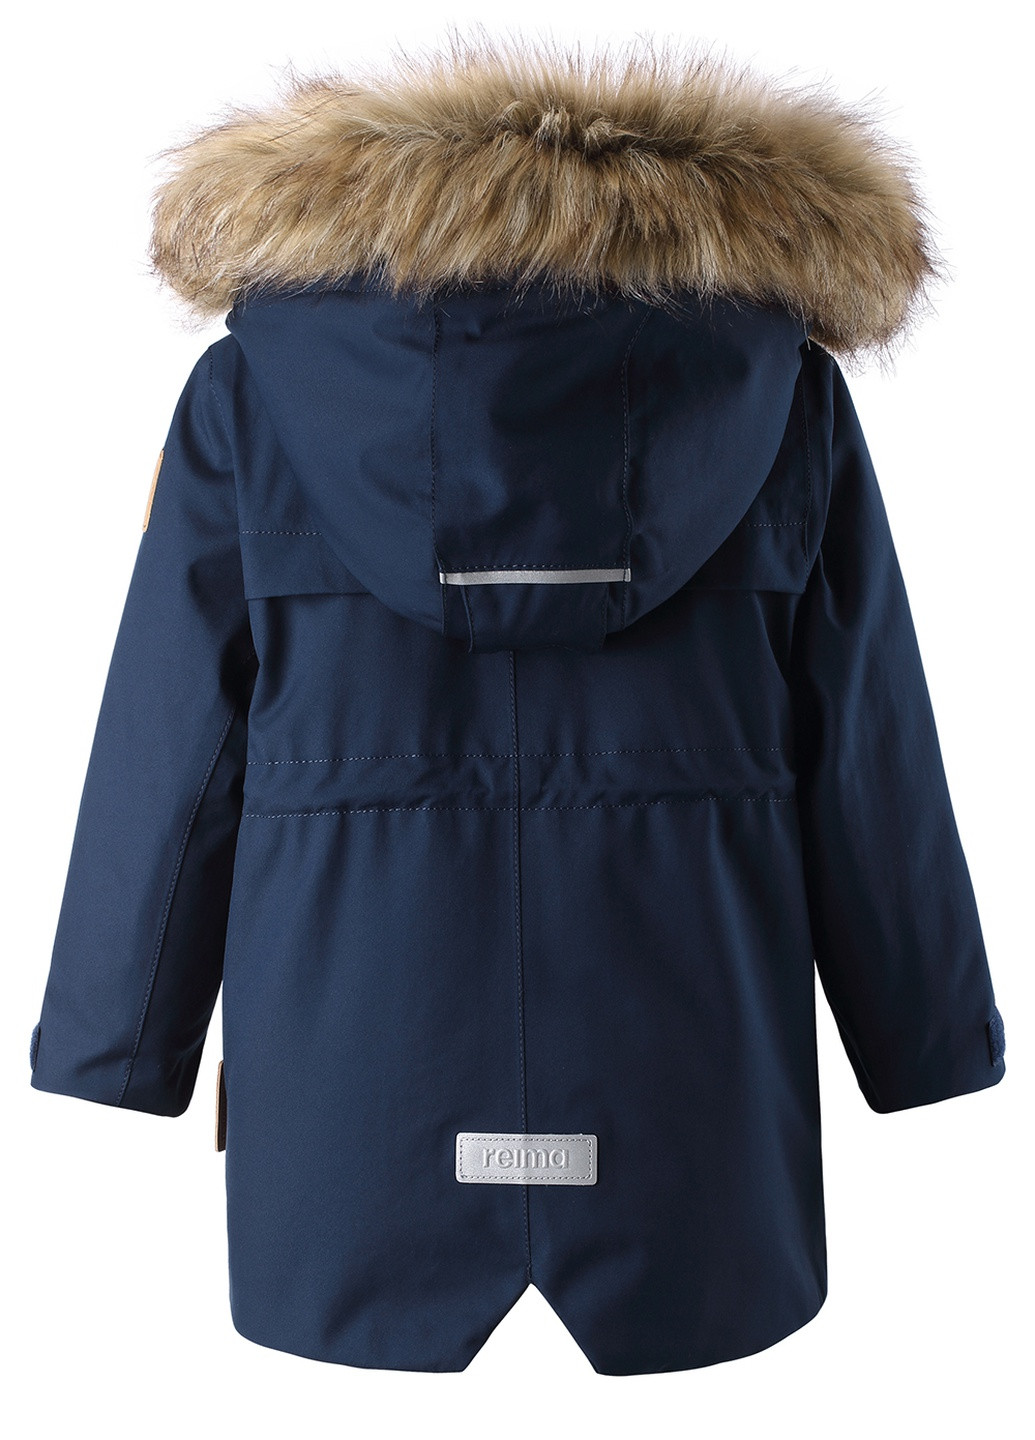 Темно-синяя зимняя куртка tec mutka 511299-6980 Reima